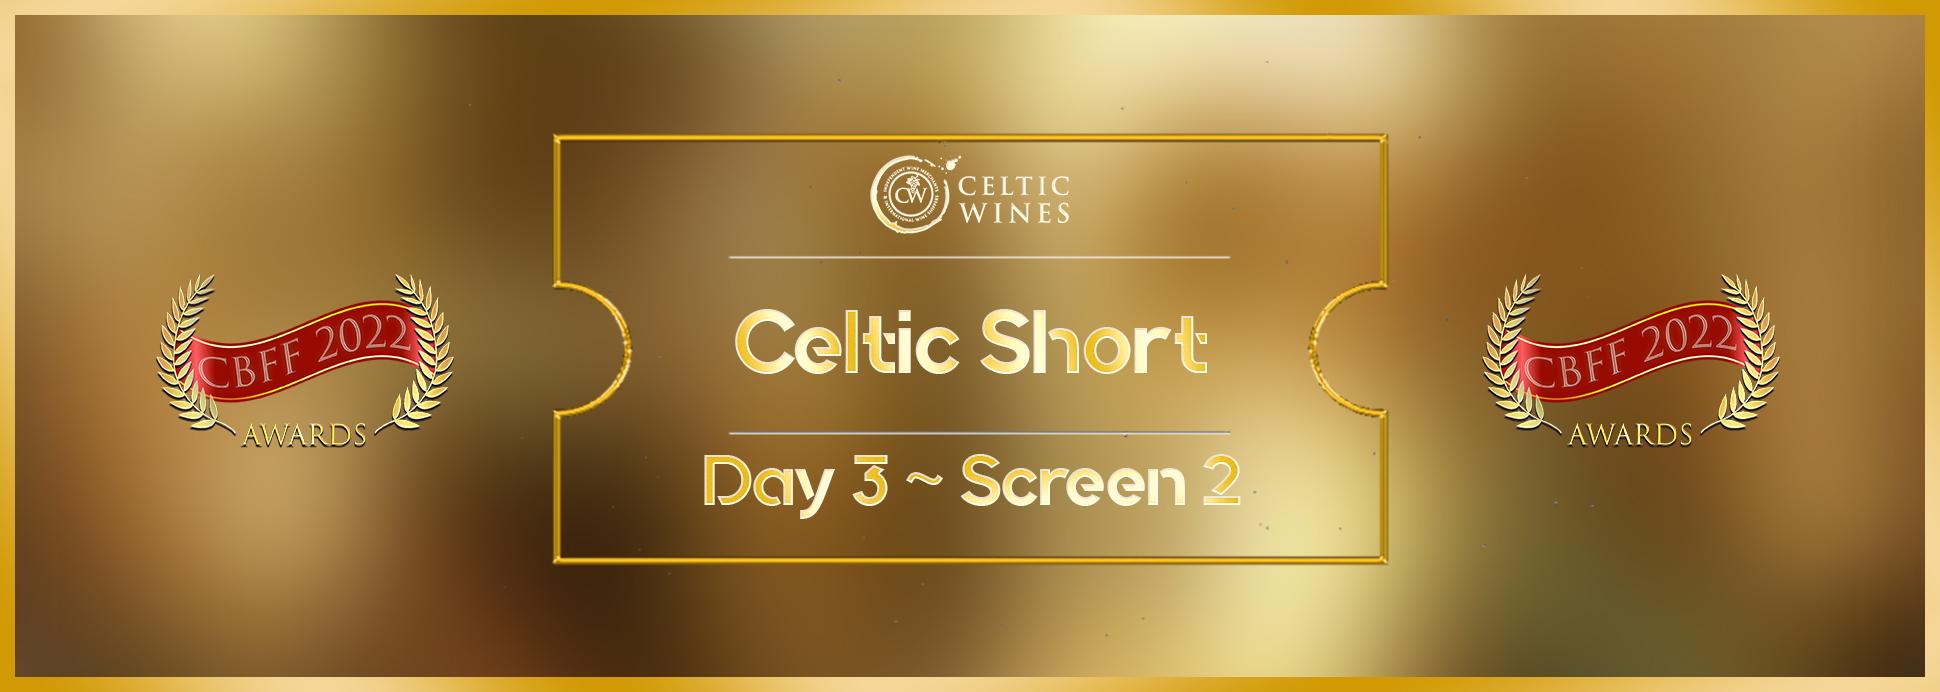 Day 3 Screen 2 Celtic Short Film